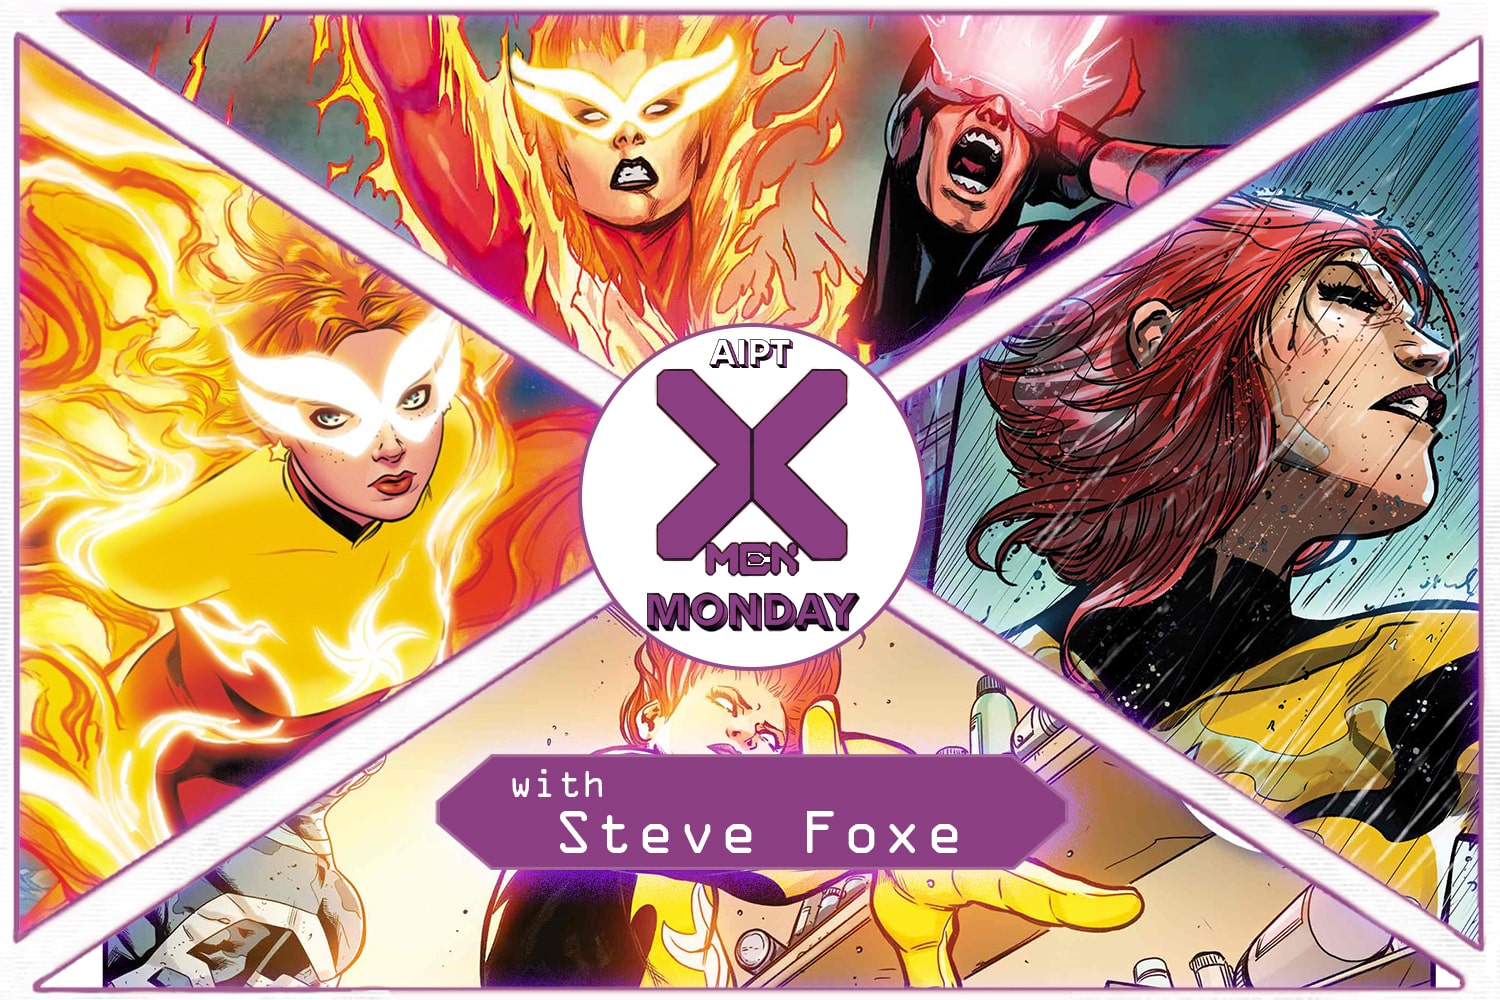 X-Men Monday #182 - Steve Foxe Talks 'X-Men Annual #1'